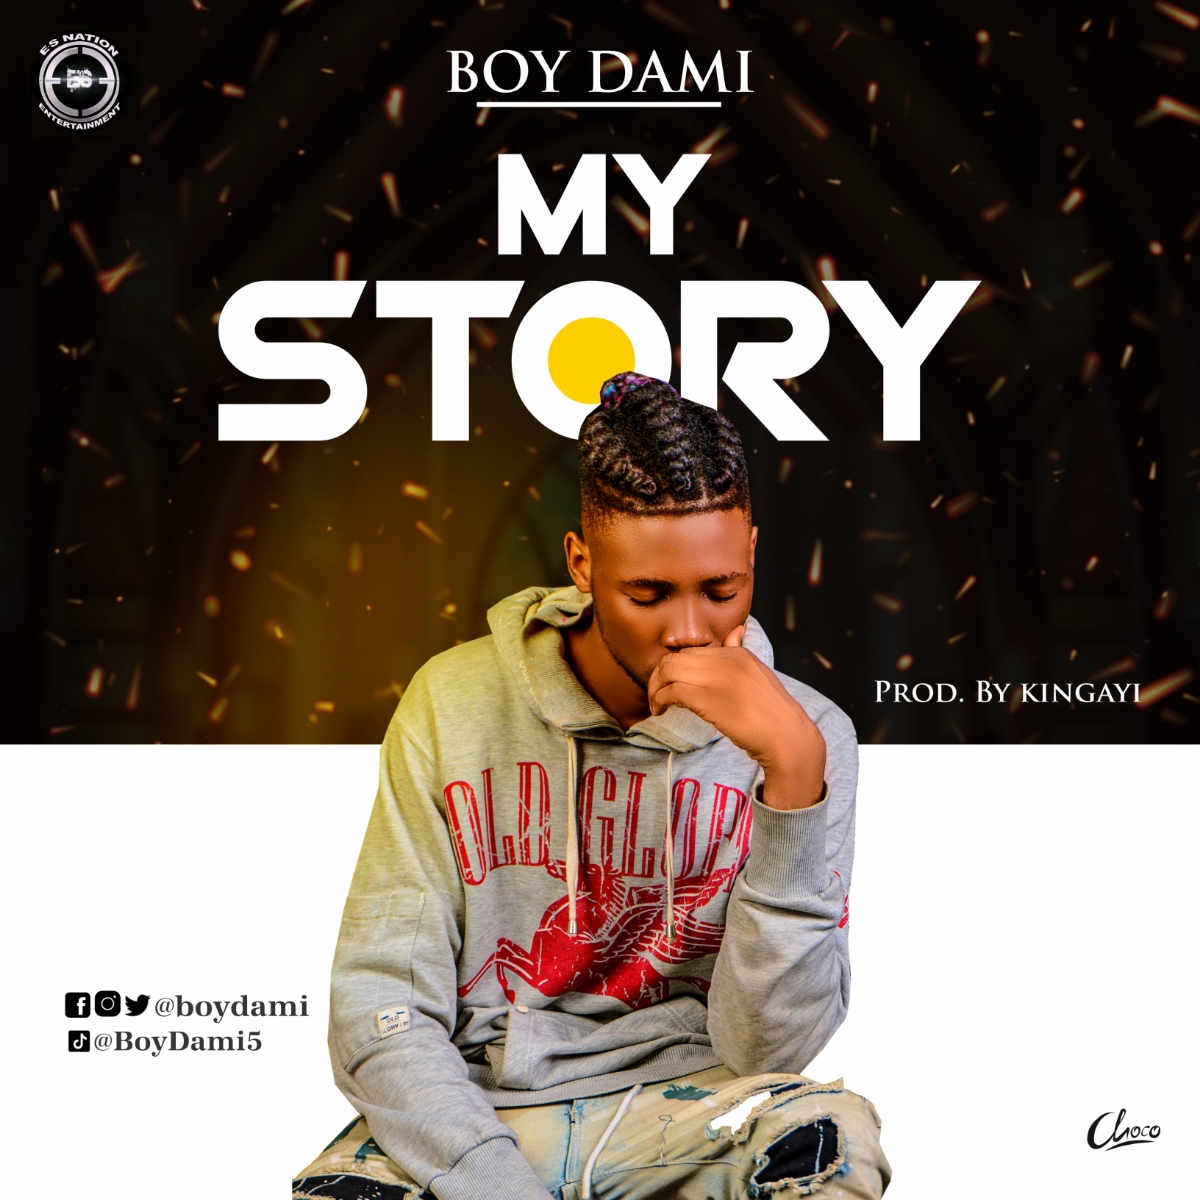 Boy Dami -"My Story" (prod. KingAyi) 9